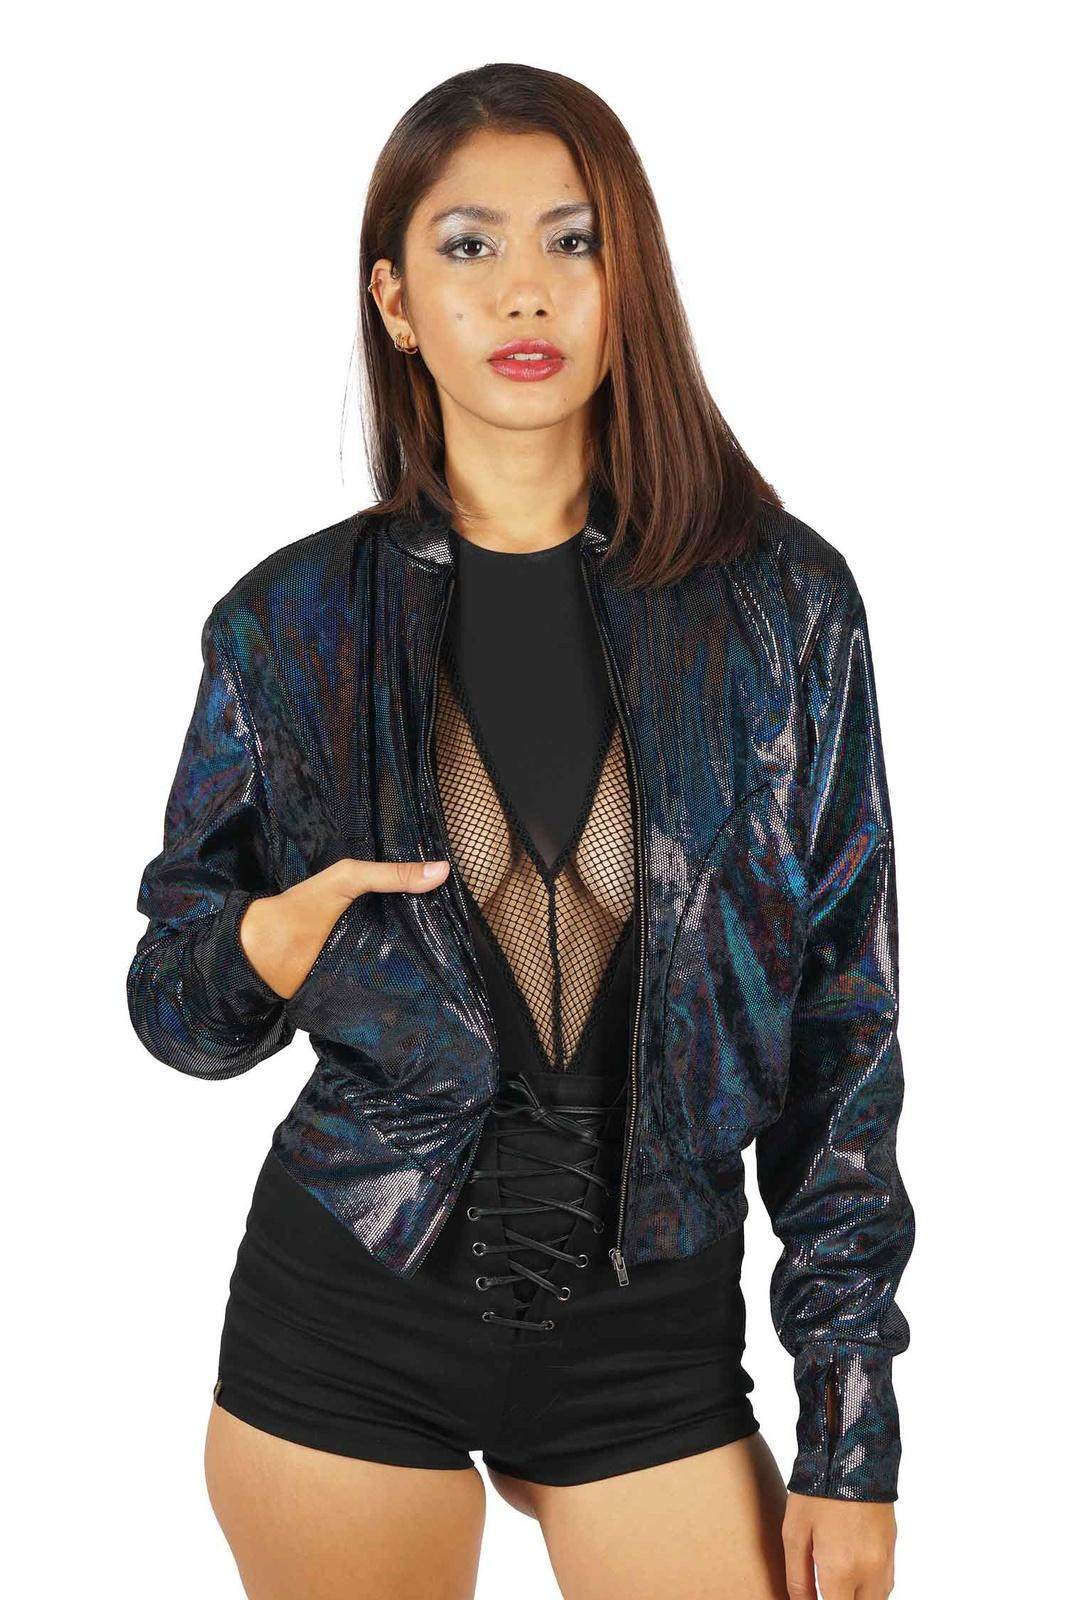 womens velvet bomber jacket in holographic black from Love Khaos